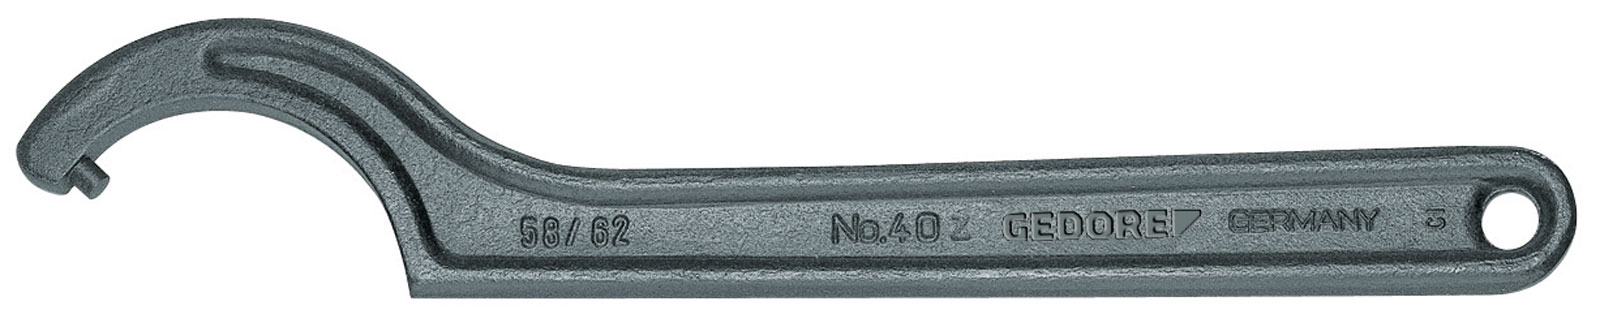 Bild von 40 Z 95-100 Hakenschlüssel, DIN 1810 Form B, 95-100 mm